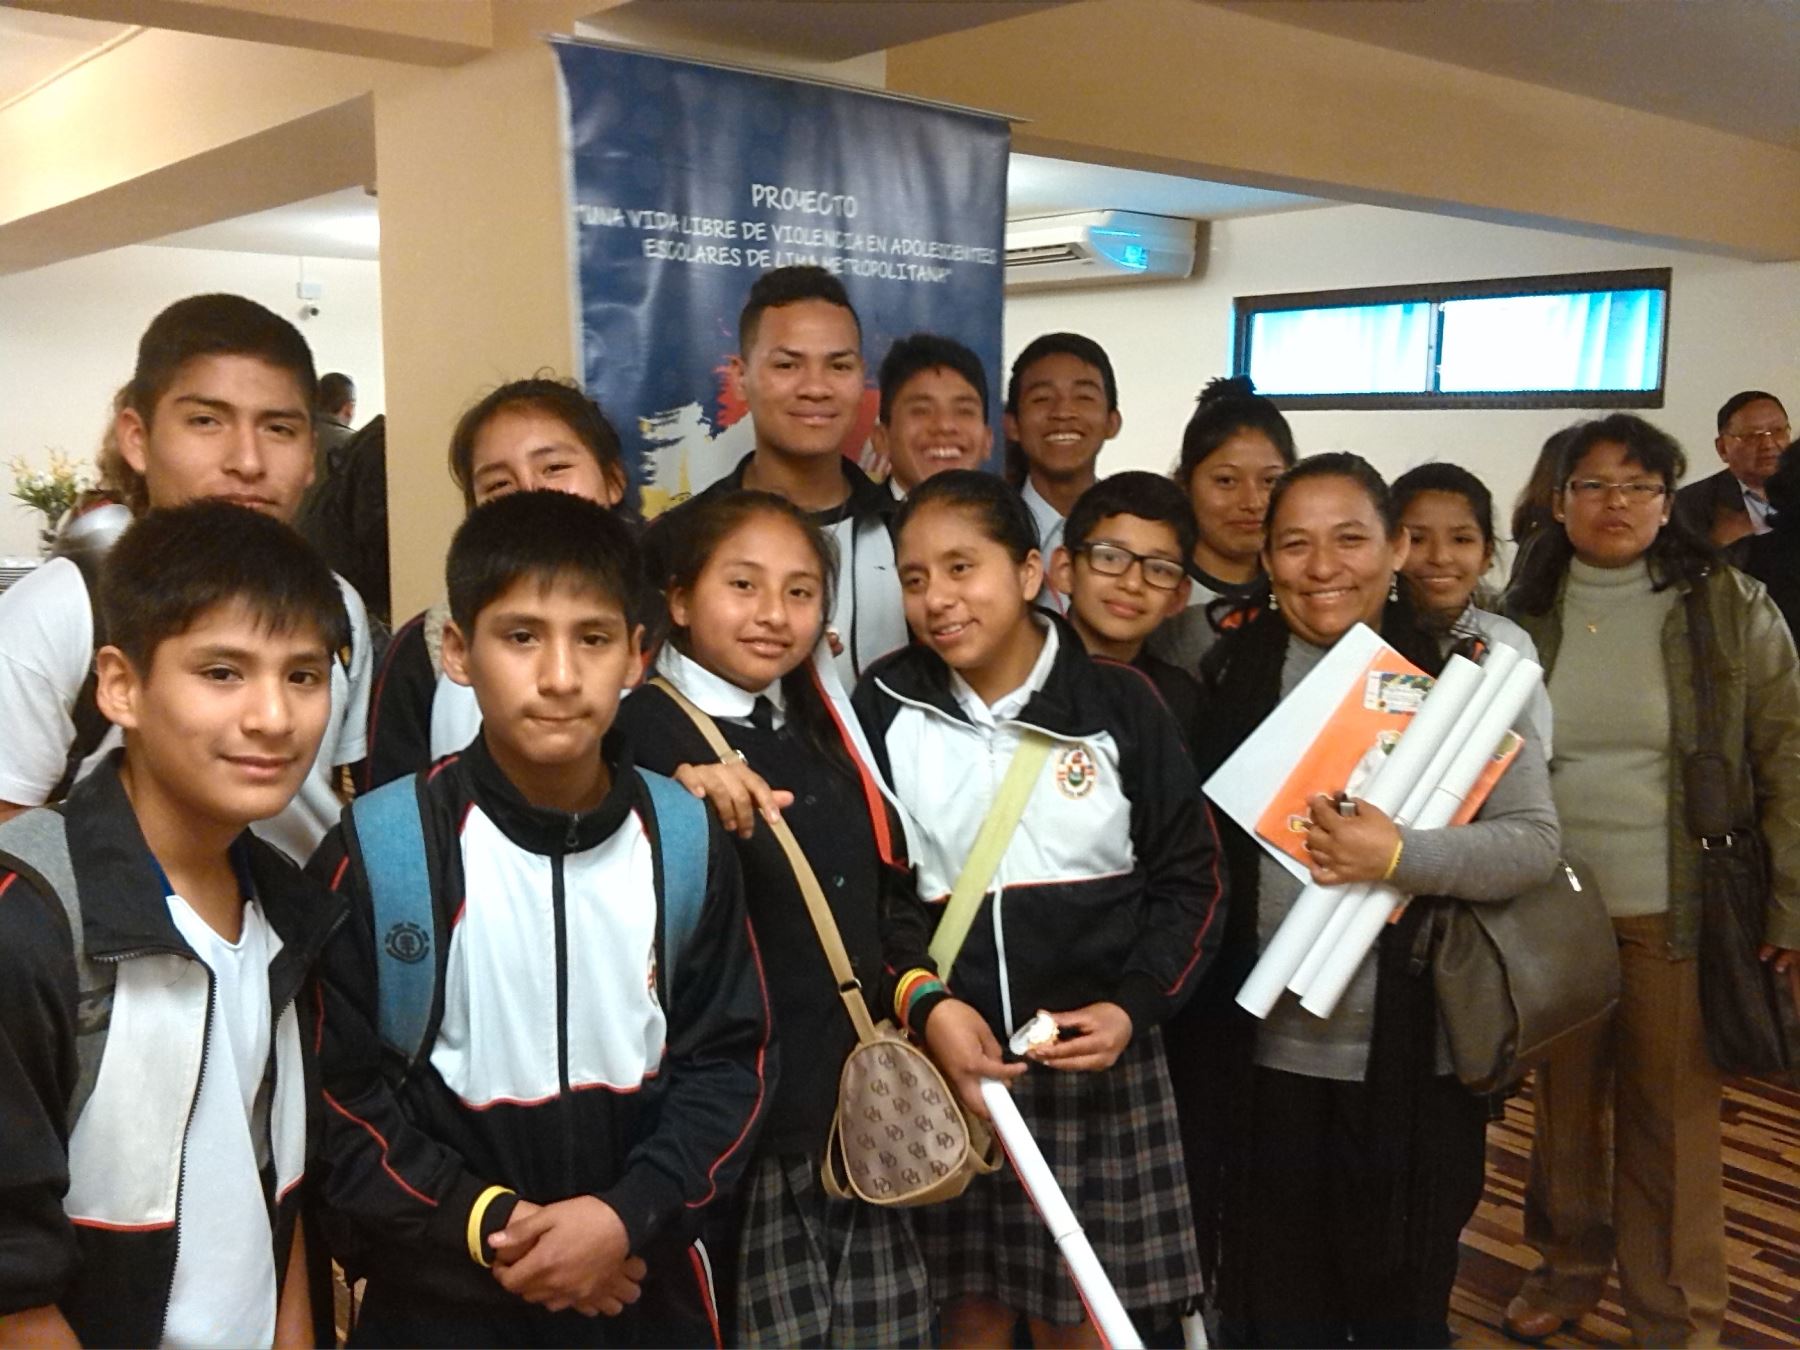 Escolares estuvieron presentes en presentación de resultados del proyecto “Una vida libre de violencia en adolescentes escolares de Lima Metropolitana.